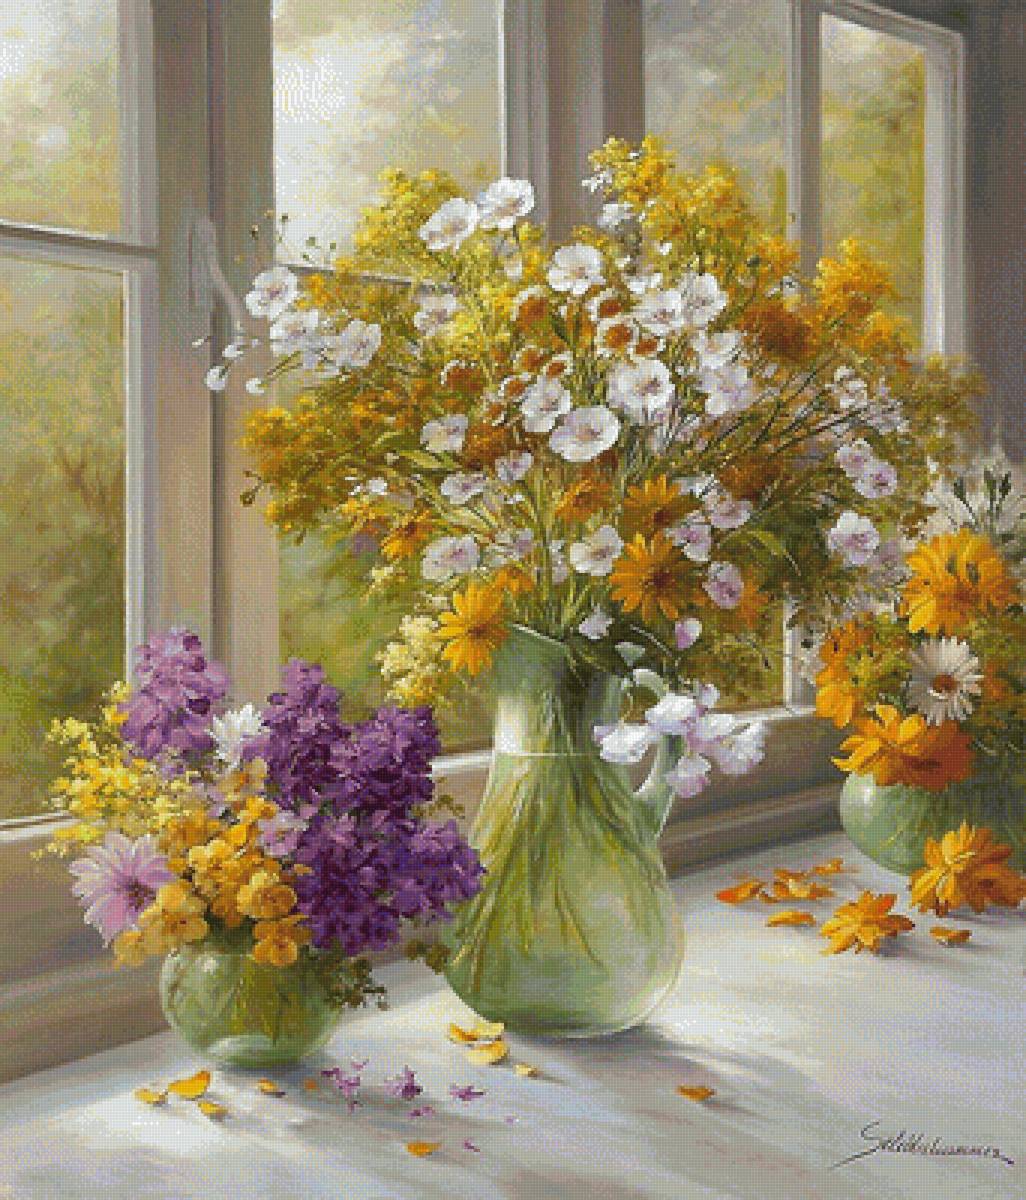 Утро. Хайнс Шольнхаммер - окно, ваза, утро, цветы - предпросмотр